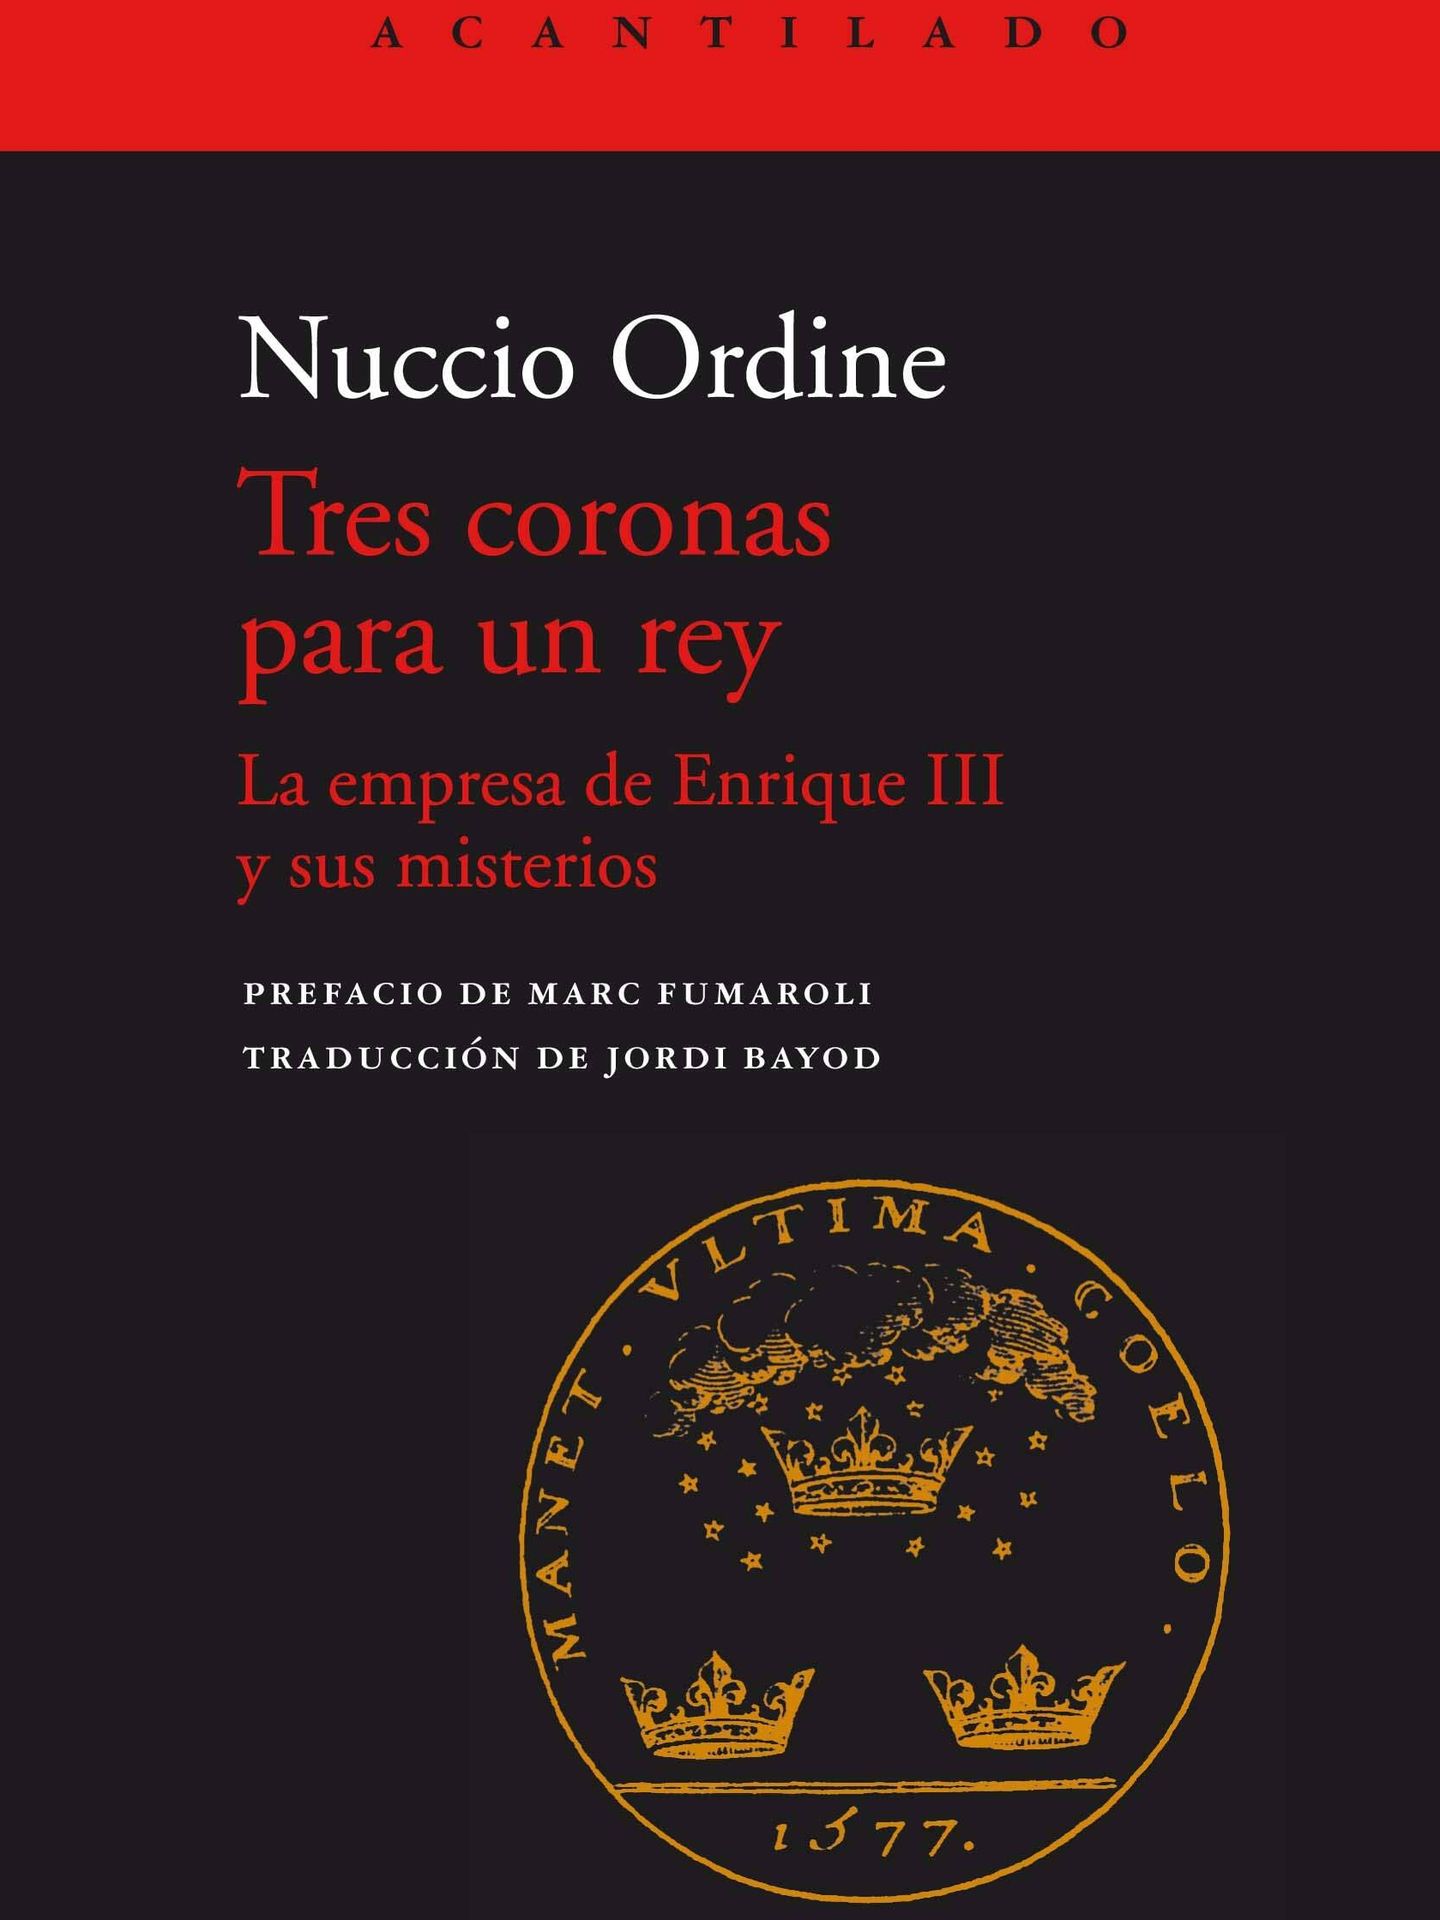 'Tres coronas para un rey', de Nuccio Ordine (Acantilado)